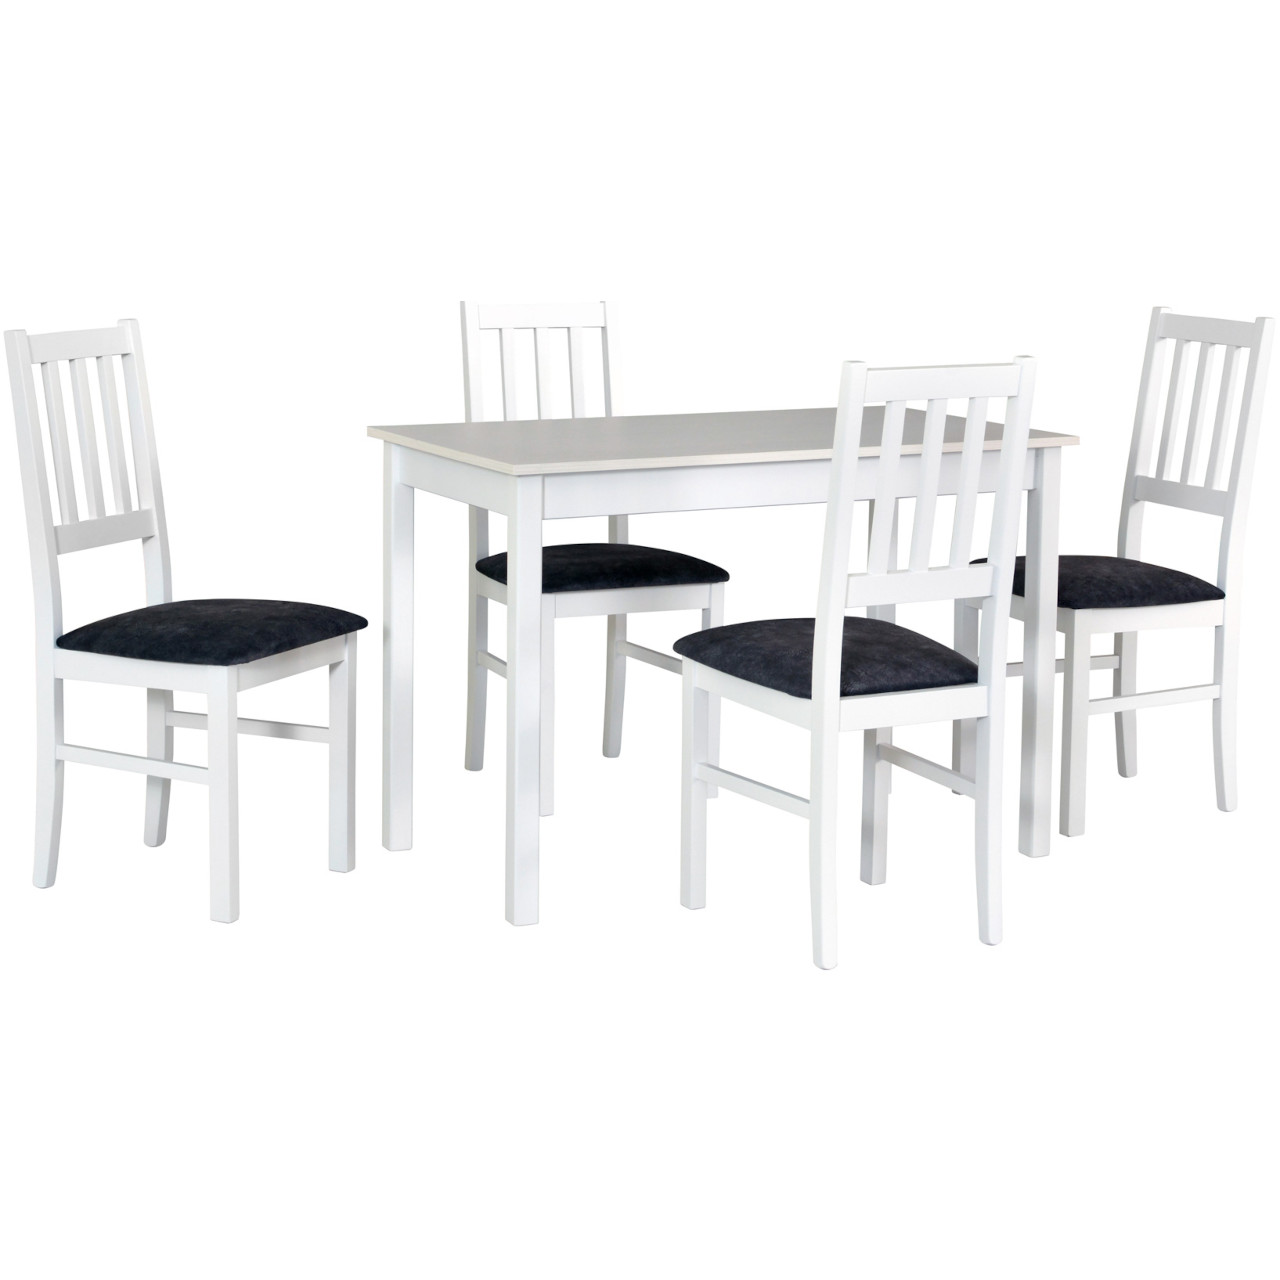 Asztal MAX 2 fehér laminált + szék BOS 4 (4 db) fehér / 24B